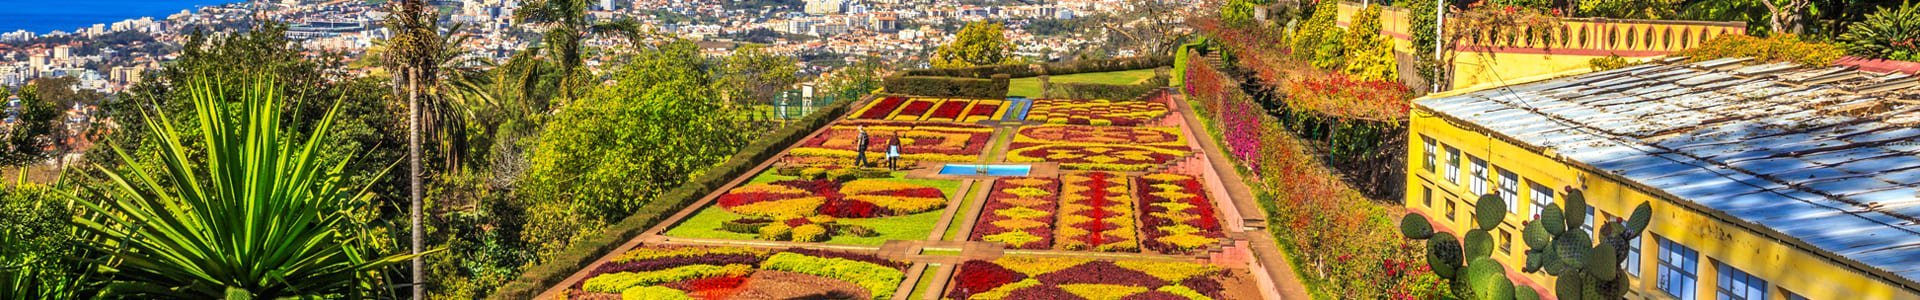 Botanische tuin in Funchal, Portugal